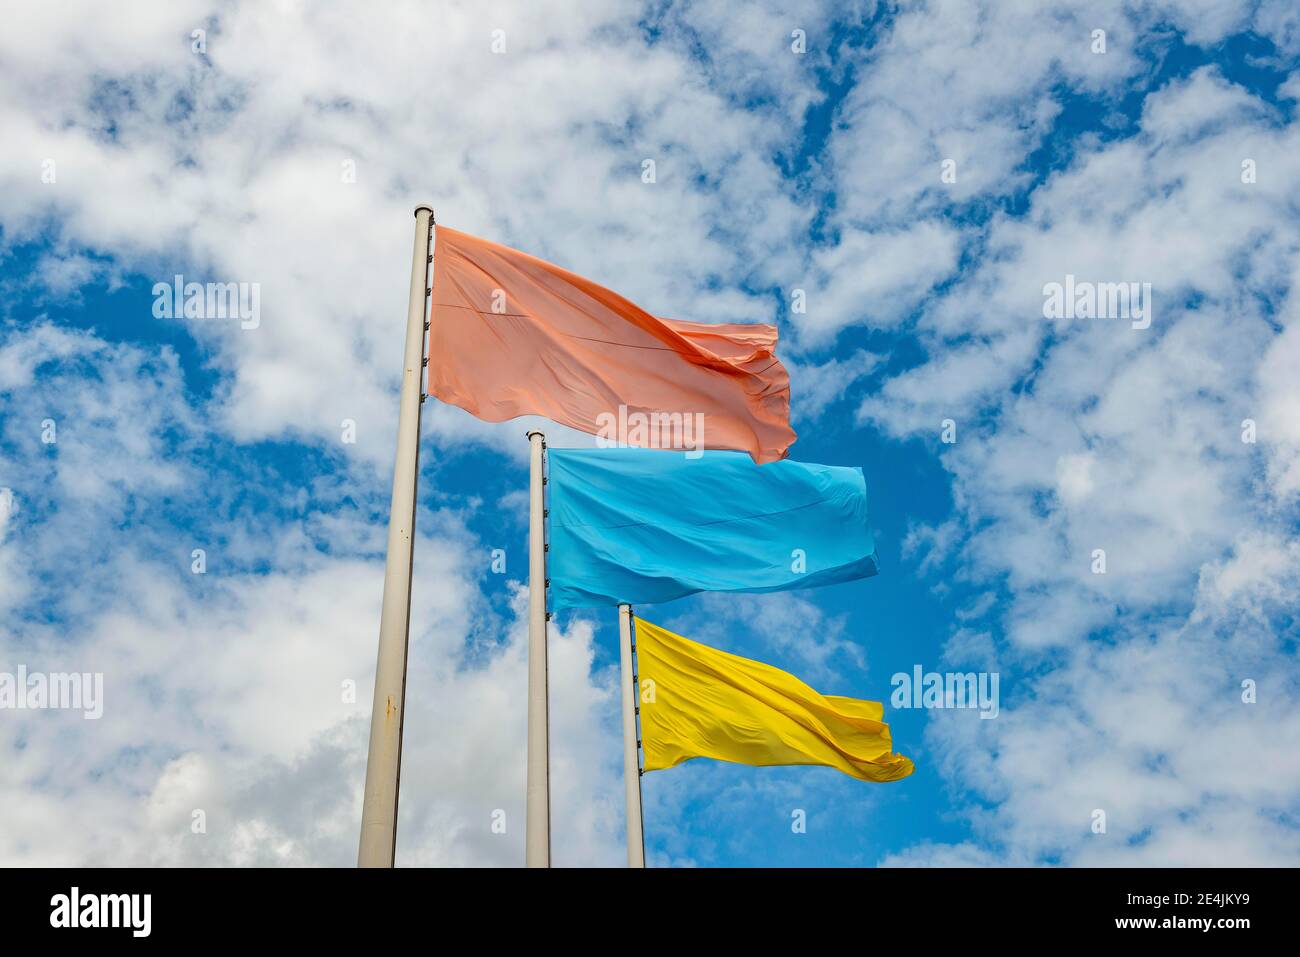 Bandiera rossa, blu e gialla davanti al cielo nuvoloso, Berlino, Germania Foto Stock